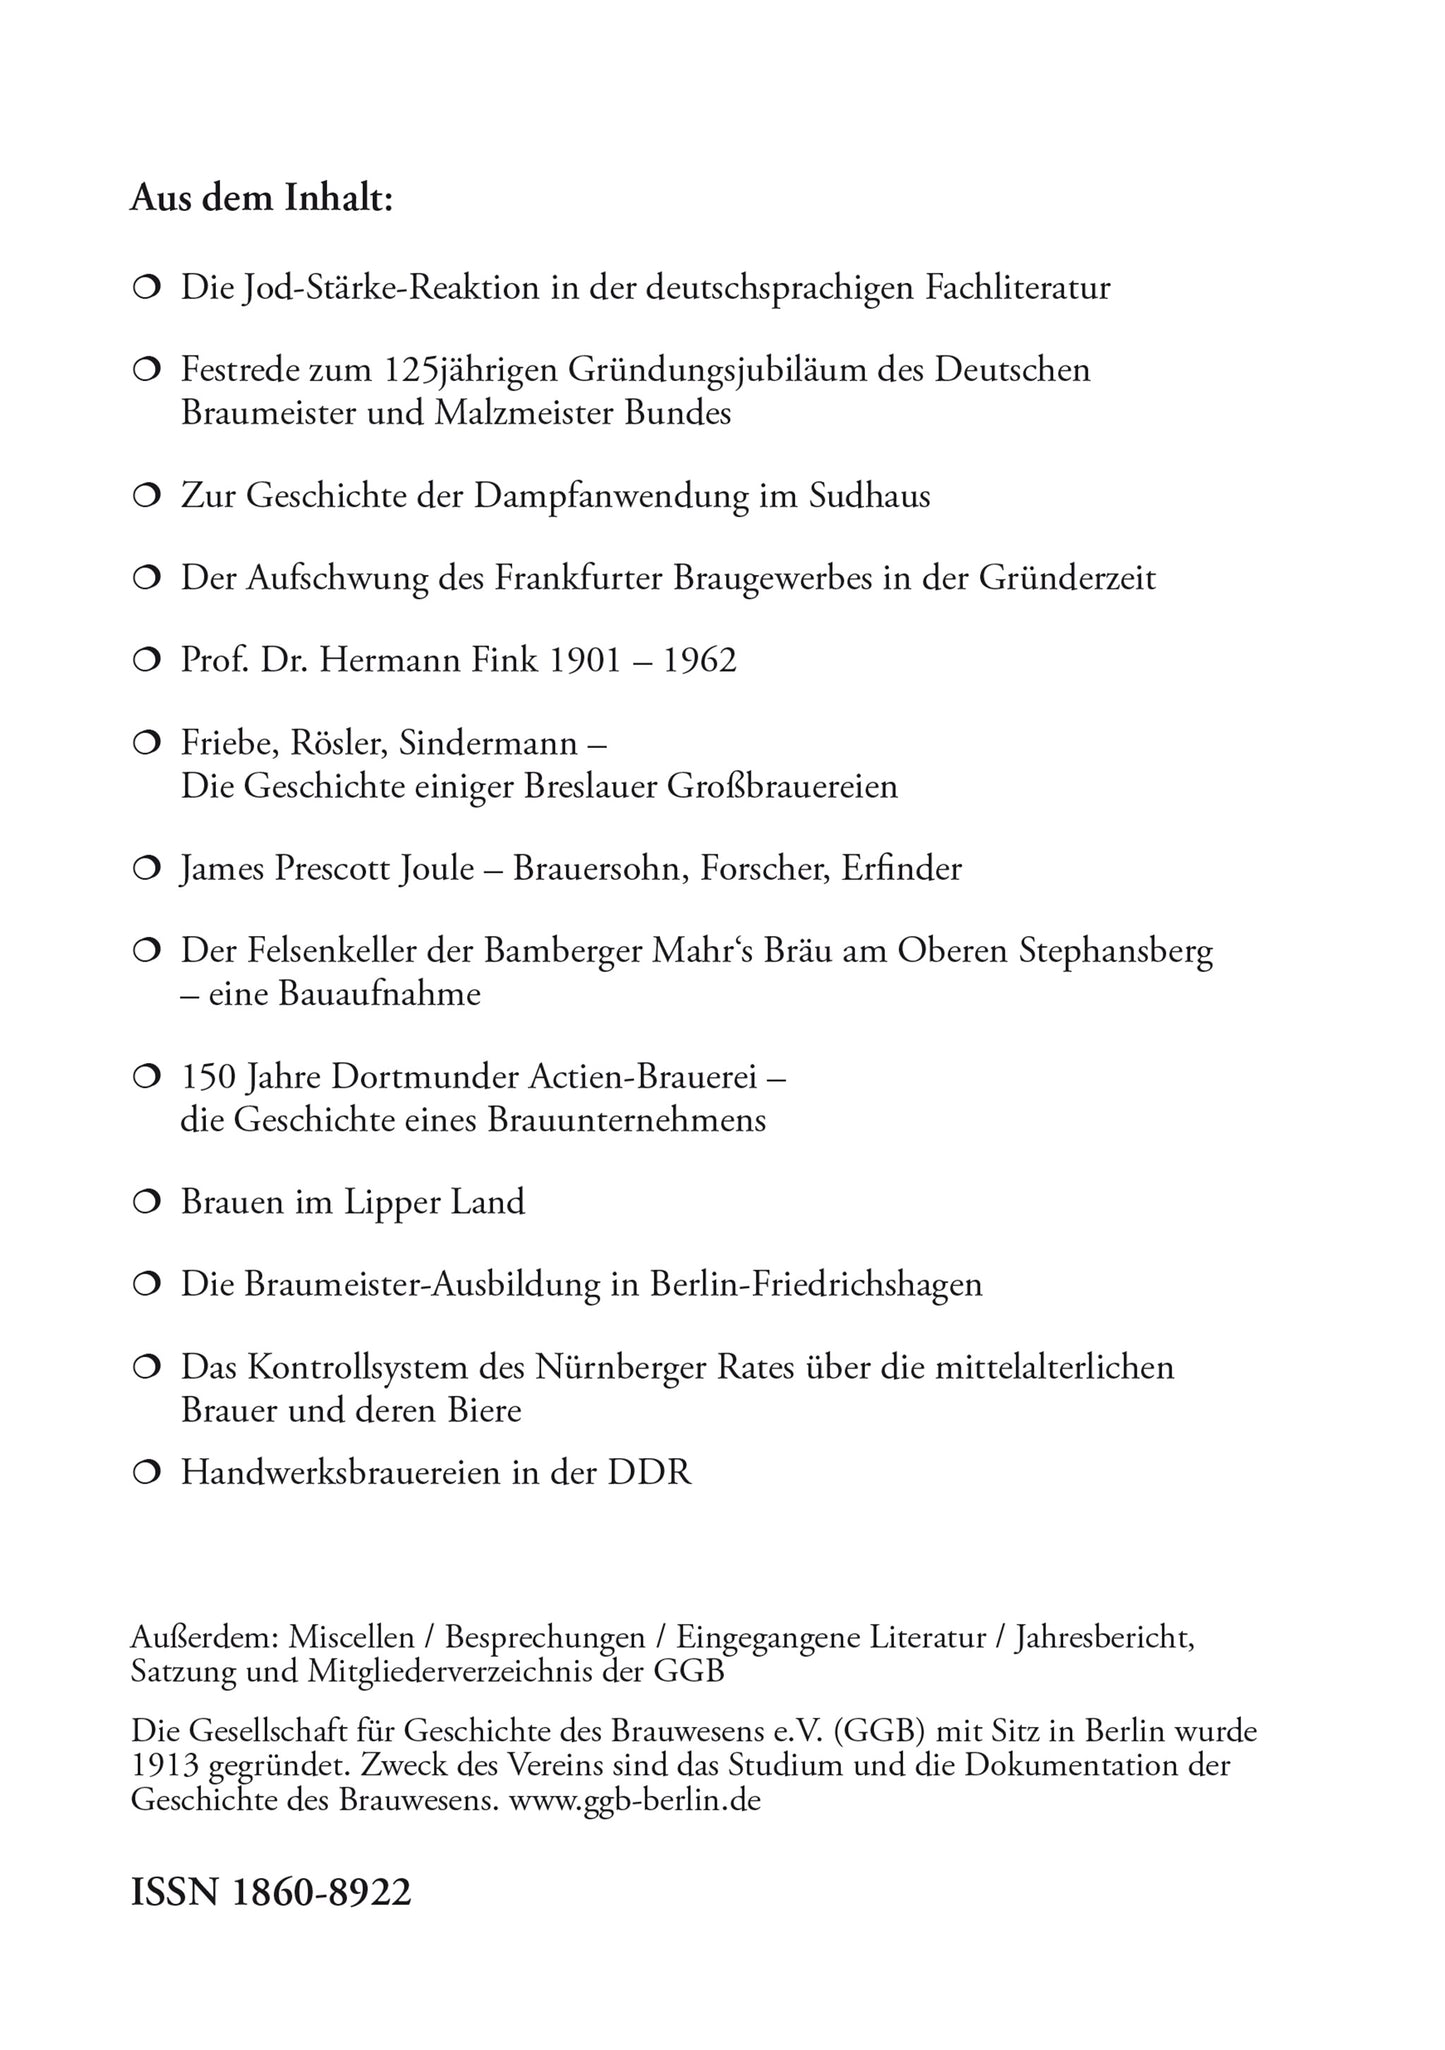 Jahrbuch 2018 der Gesellschaft für Geschichte des Brauwesens e.V. (GGB)